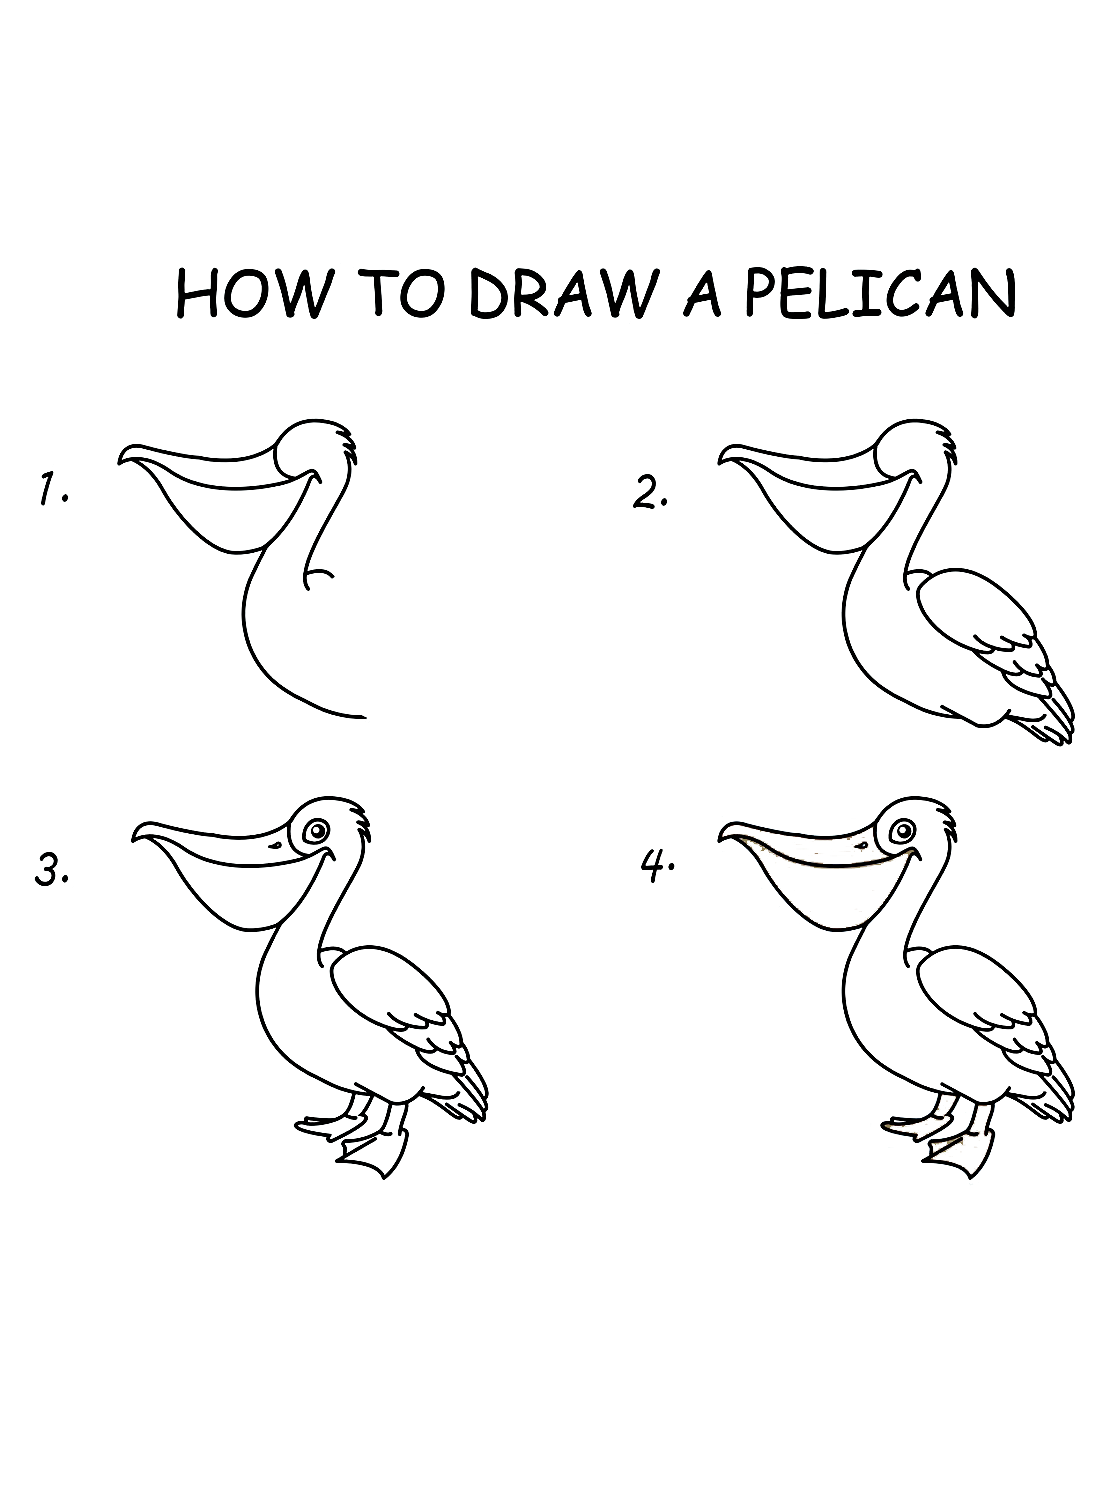 Disegnare un pellicano dal pellicano